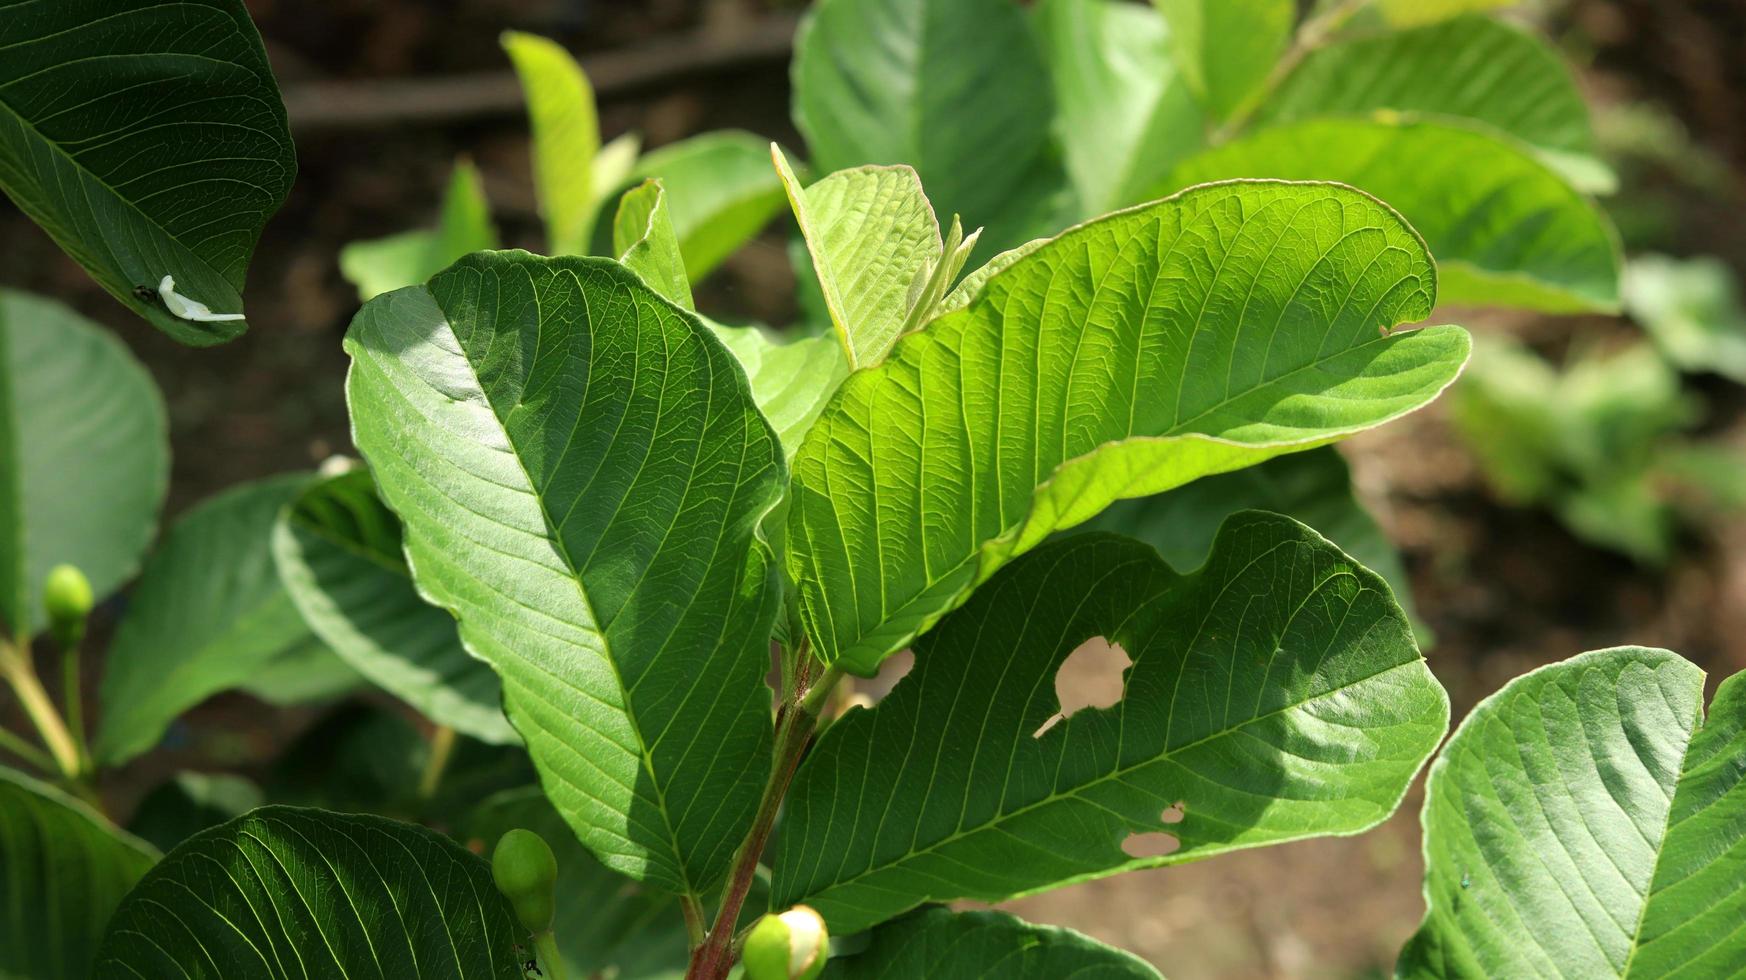 groene jonge guave plant bladeren in de tuin. guavebladeren zijn een van de traditionele kruideningrediënten die erg populair zijn, vooral om diarree en winderigheid te behandelen foto